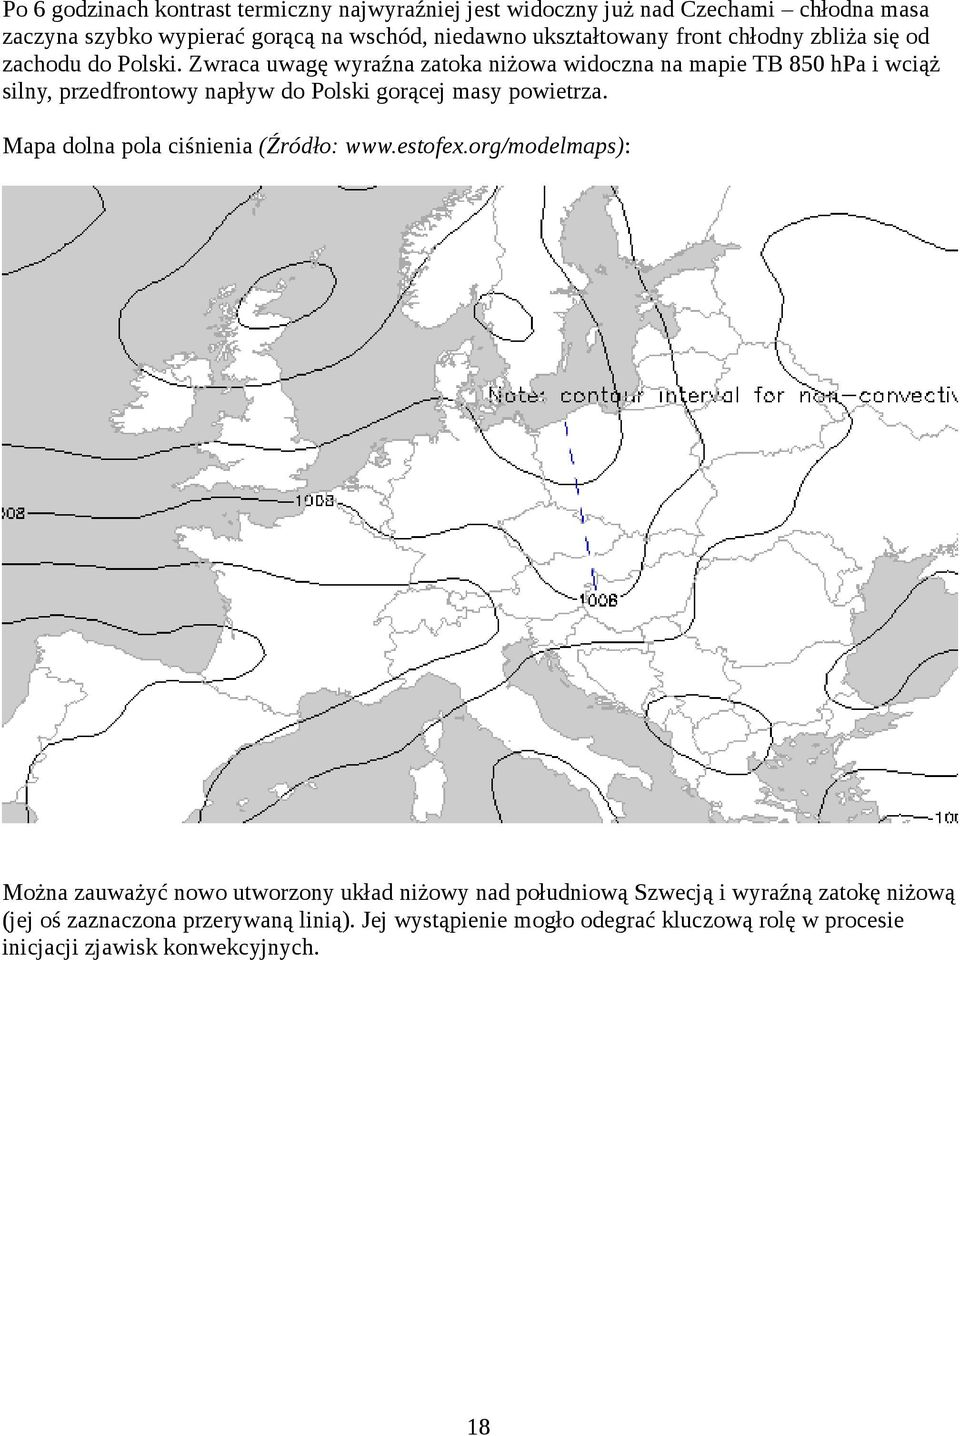 Zwraca uwagę wyraźna zatoka niżowa widoczna na mapie TB 850 hpa i wciąż silny, przedfrontowy napływ do Polski gorącej masy powietrza.